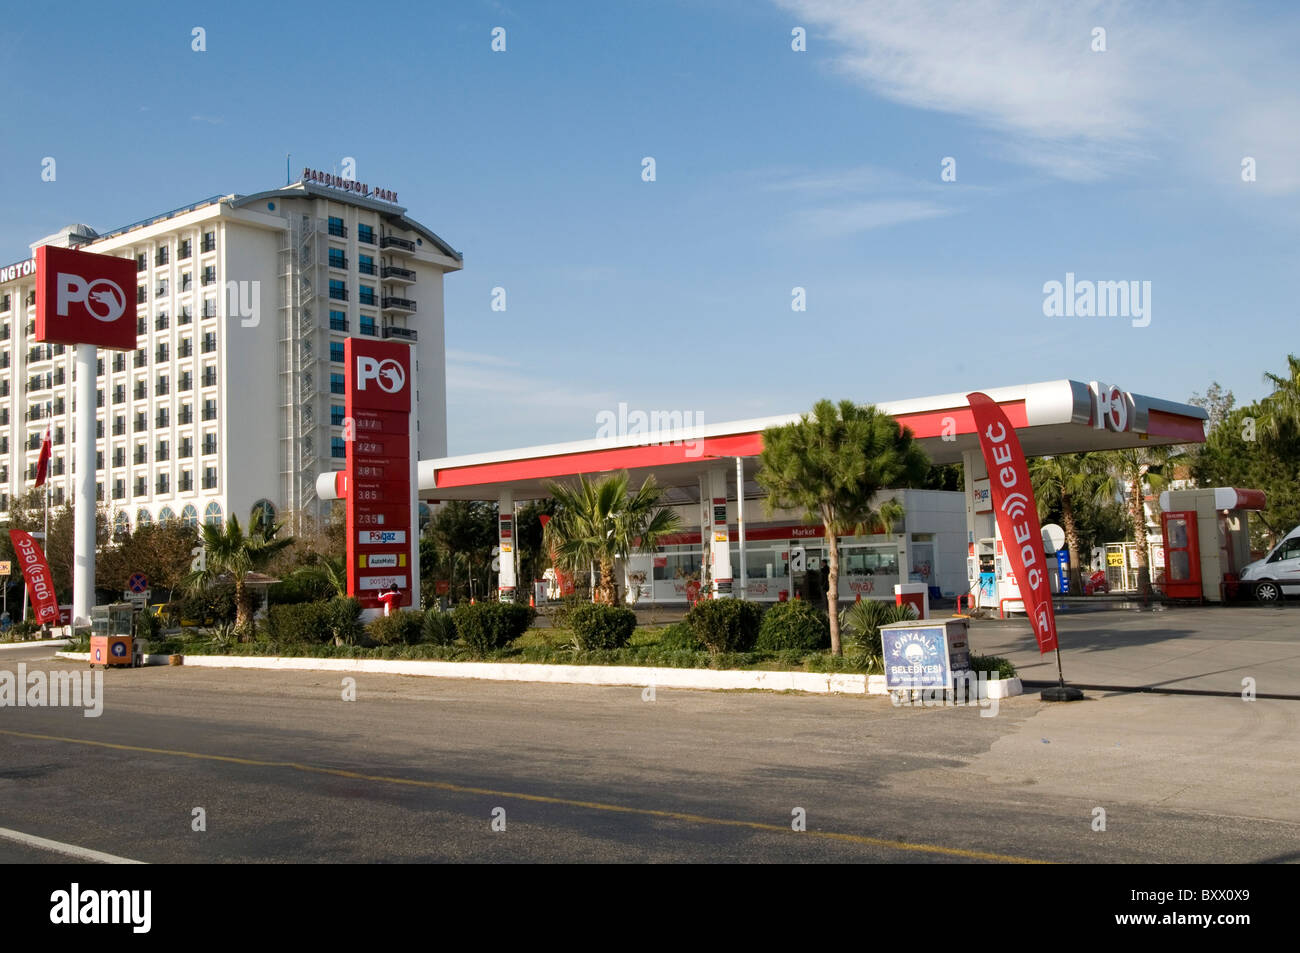 La benzina Ofisi PO oli benzina olio gas station service turchia stazione pompe di marca bagno turco Foto Stock